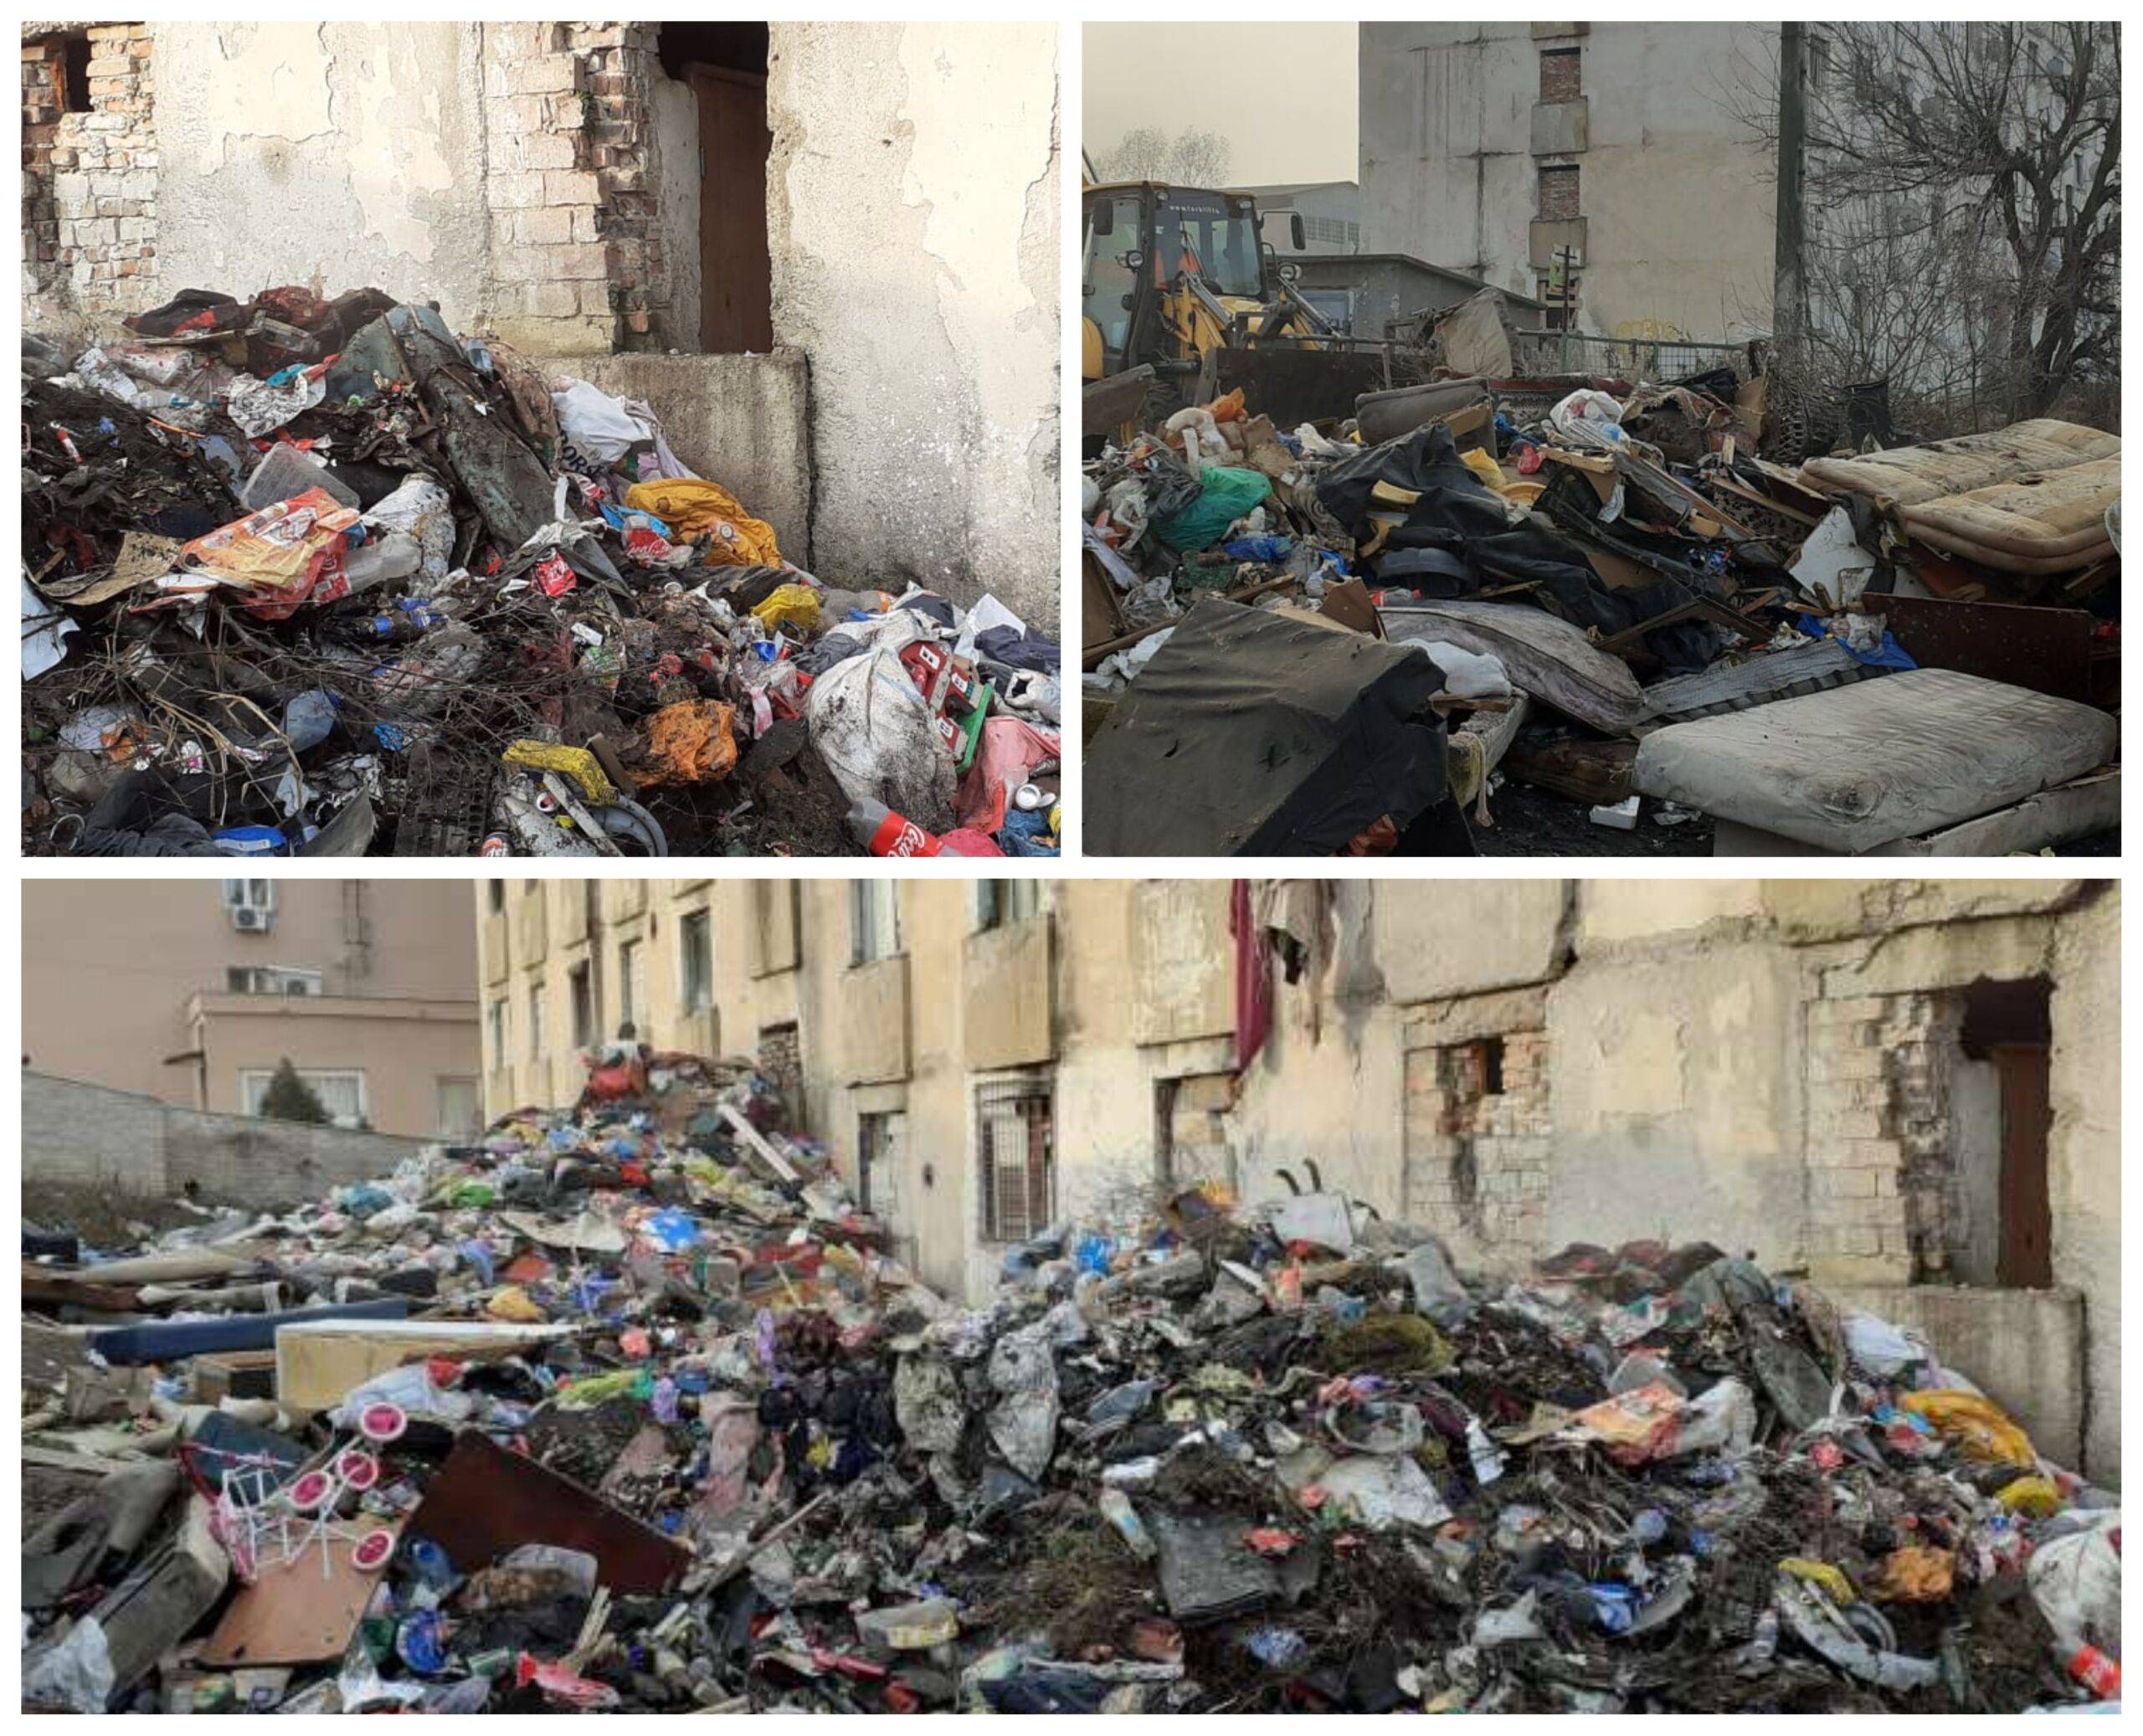 România secolului 21: locatarii aruncă gunoiul pe geam. Ce amenzi riscă aceștia